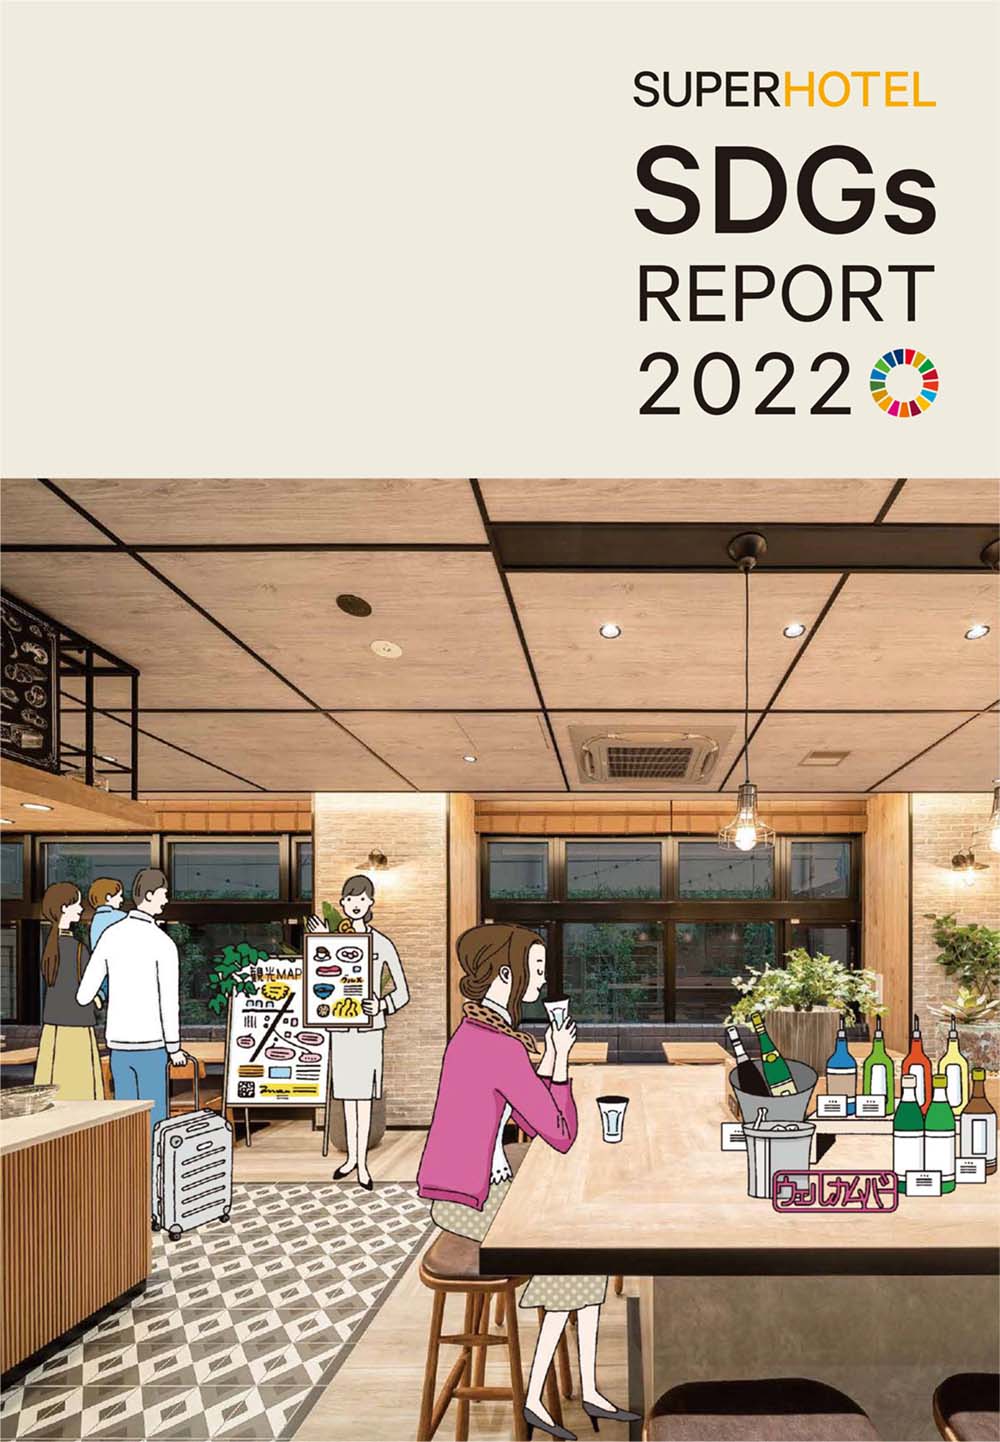 SDGs・サステナビリティに関するレポートを発行
リンククリックで「SUPERHOTEL SDGsREPORT2022」のPDFファイルを閲覧できます。